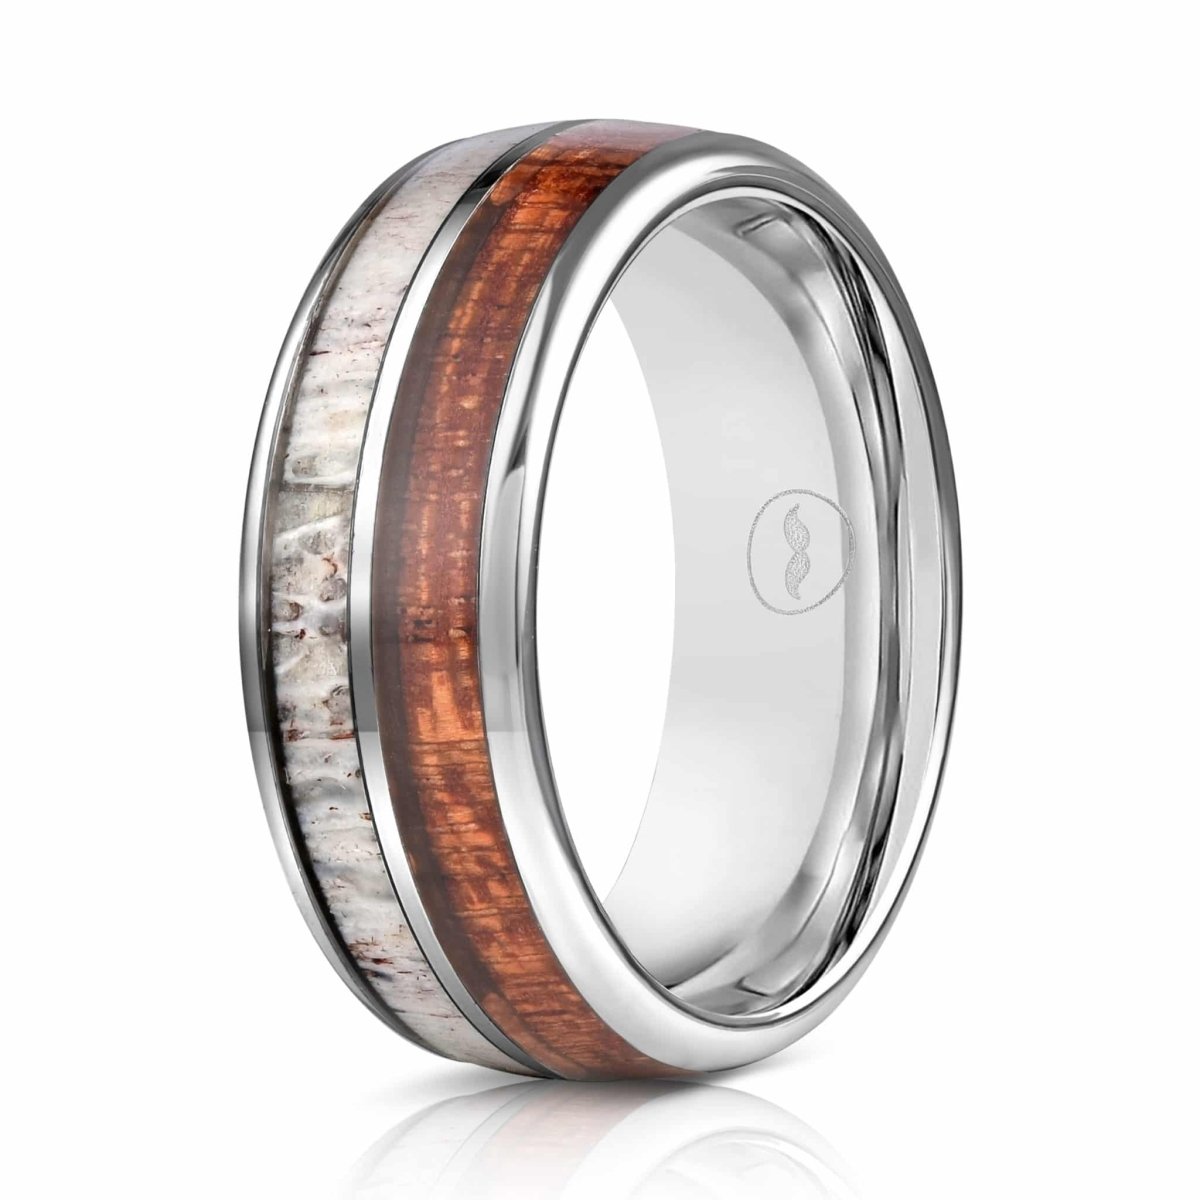 The Fishing Line Ring  Wooden wedding ring, Men's wedding ring, Antler ring